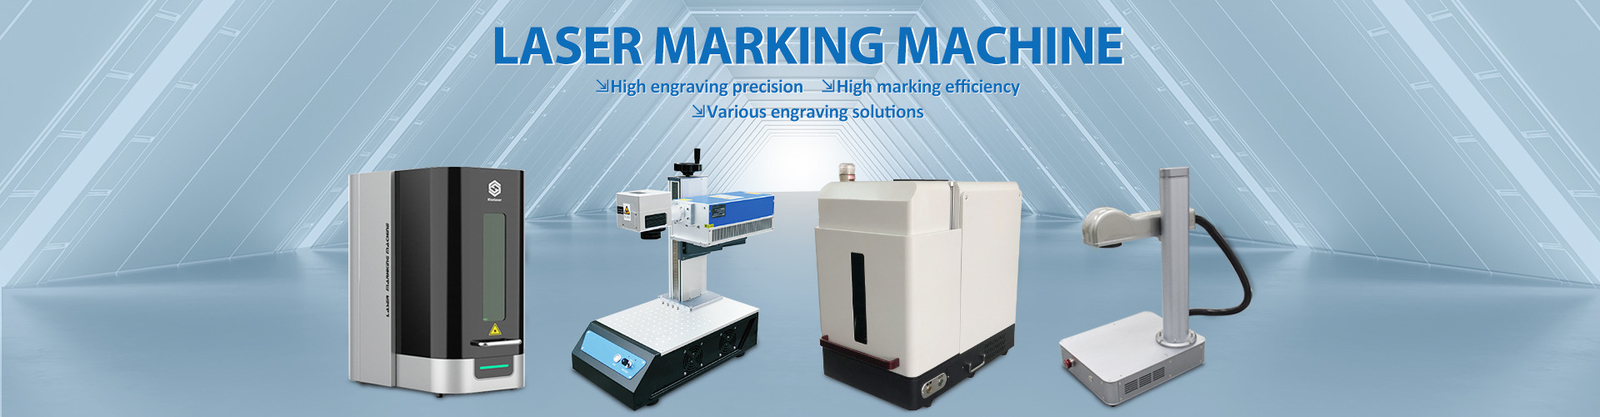 Faser-Laser-Markierungs-Maschine